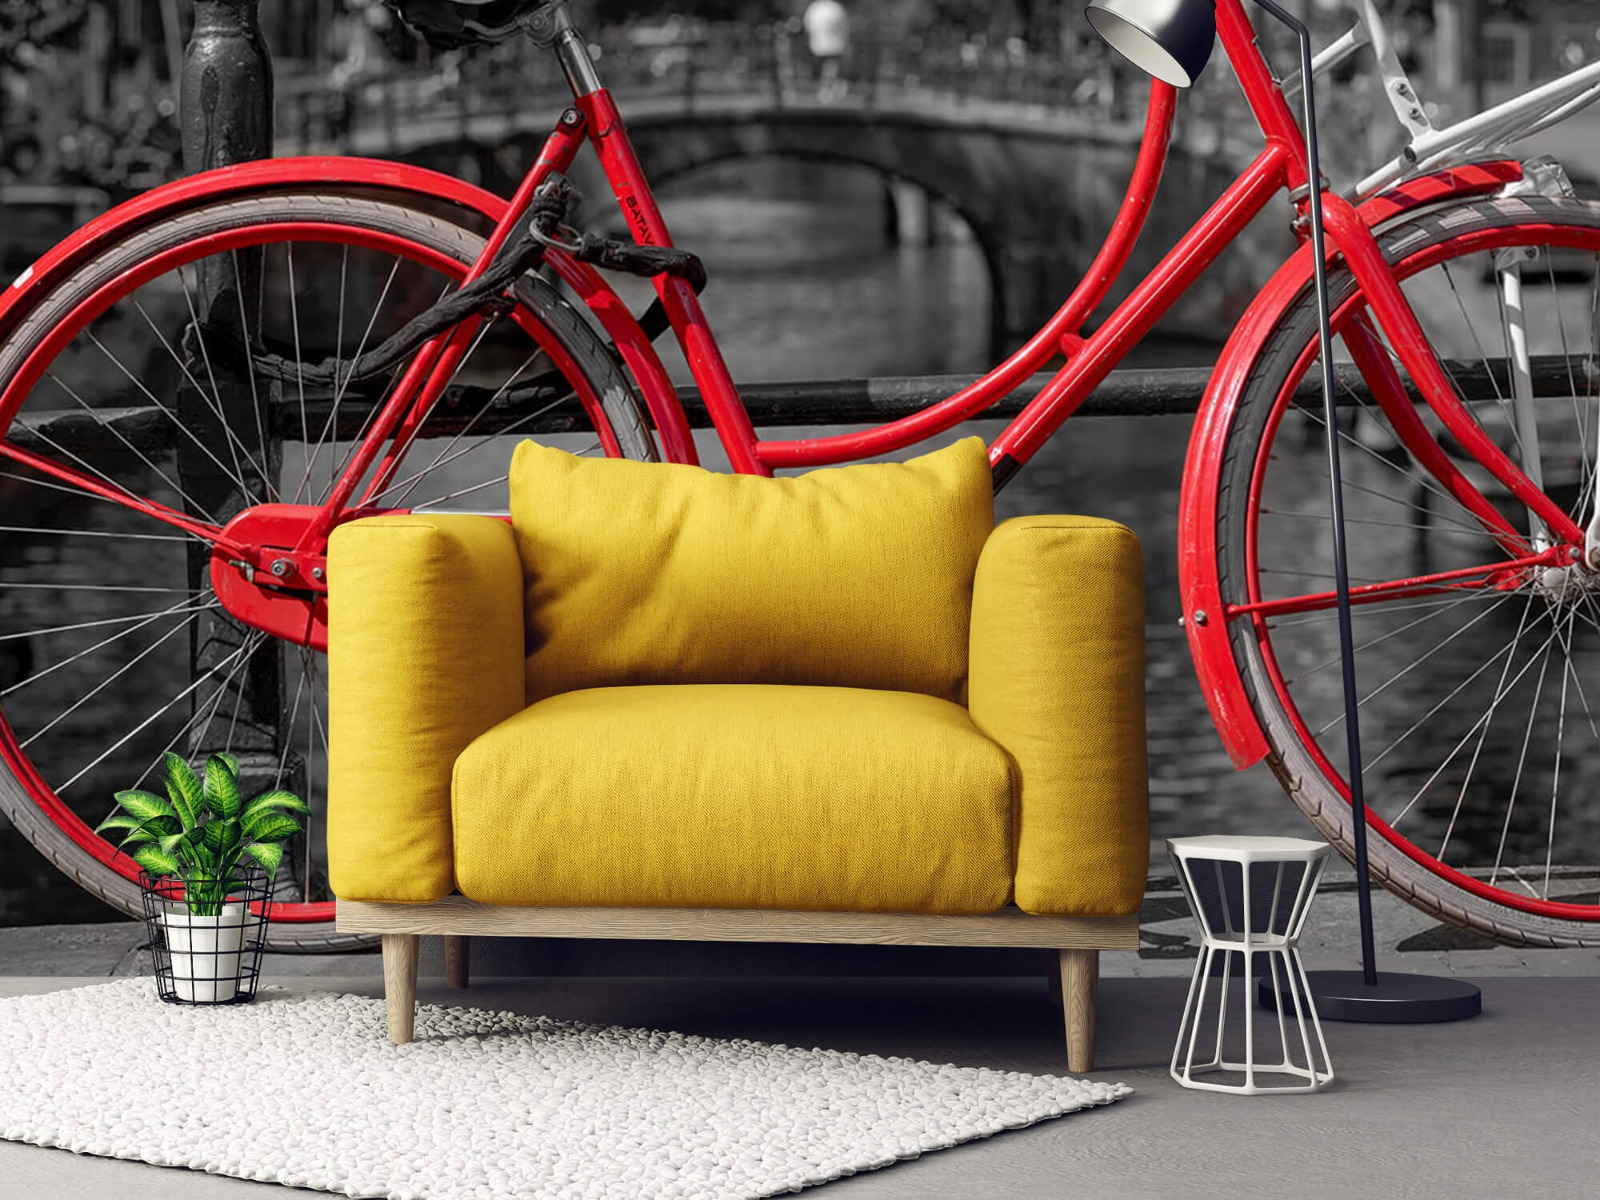 Steden behang - Rode fiets op brug - Slaapkamer 21